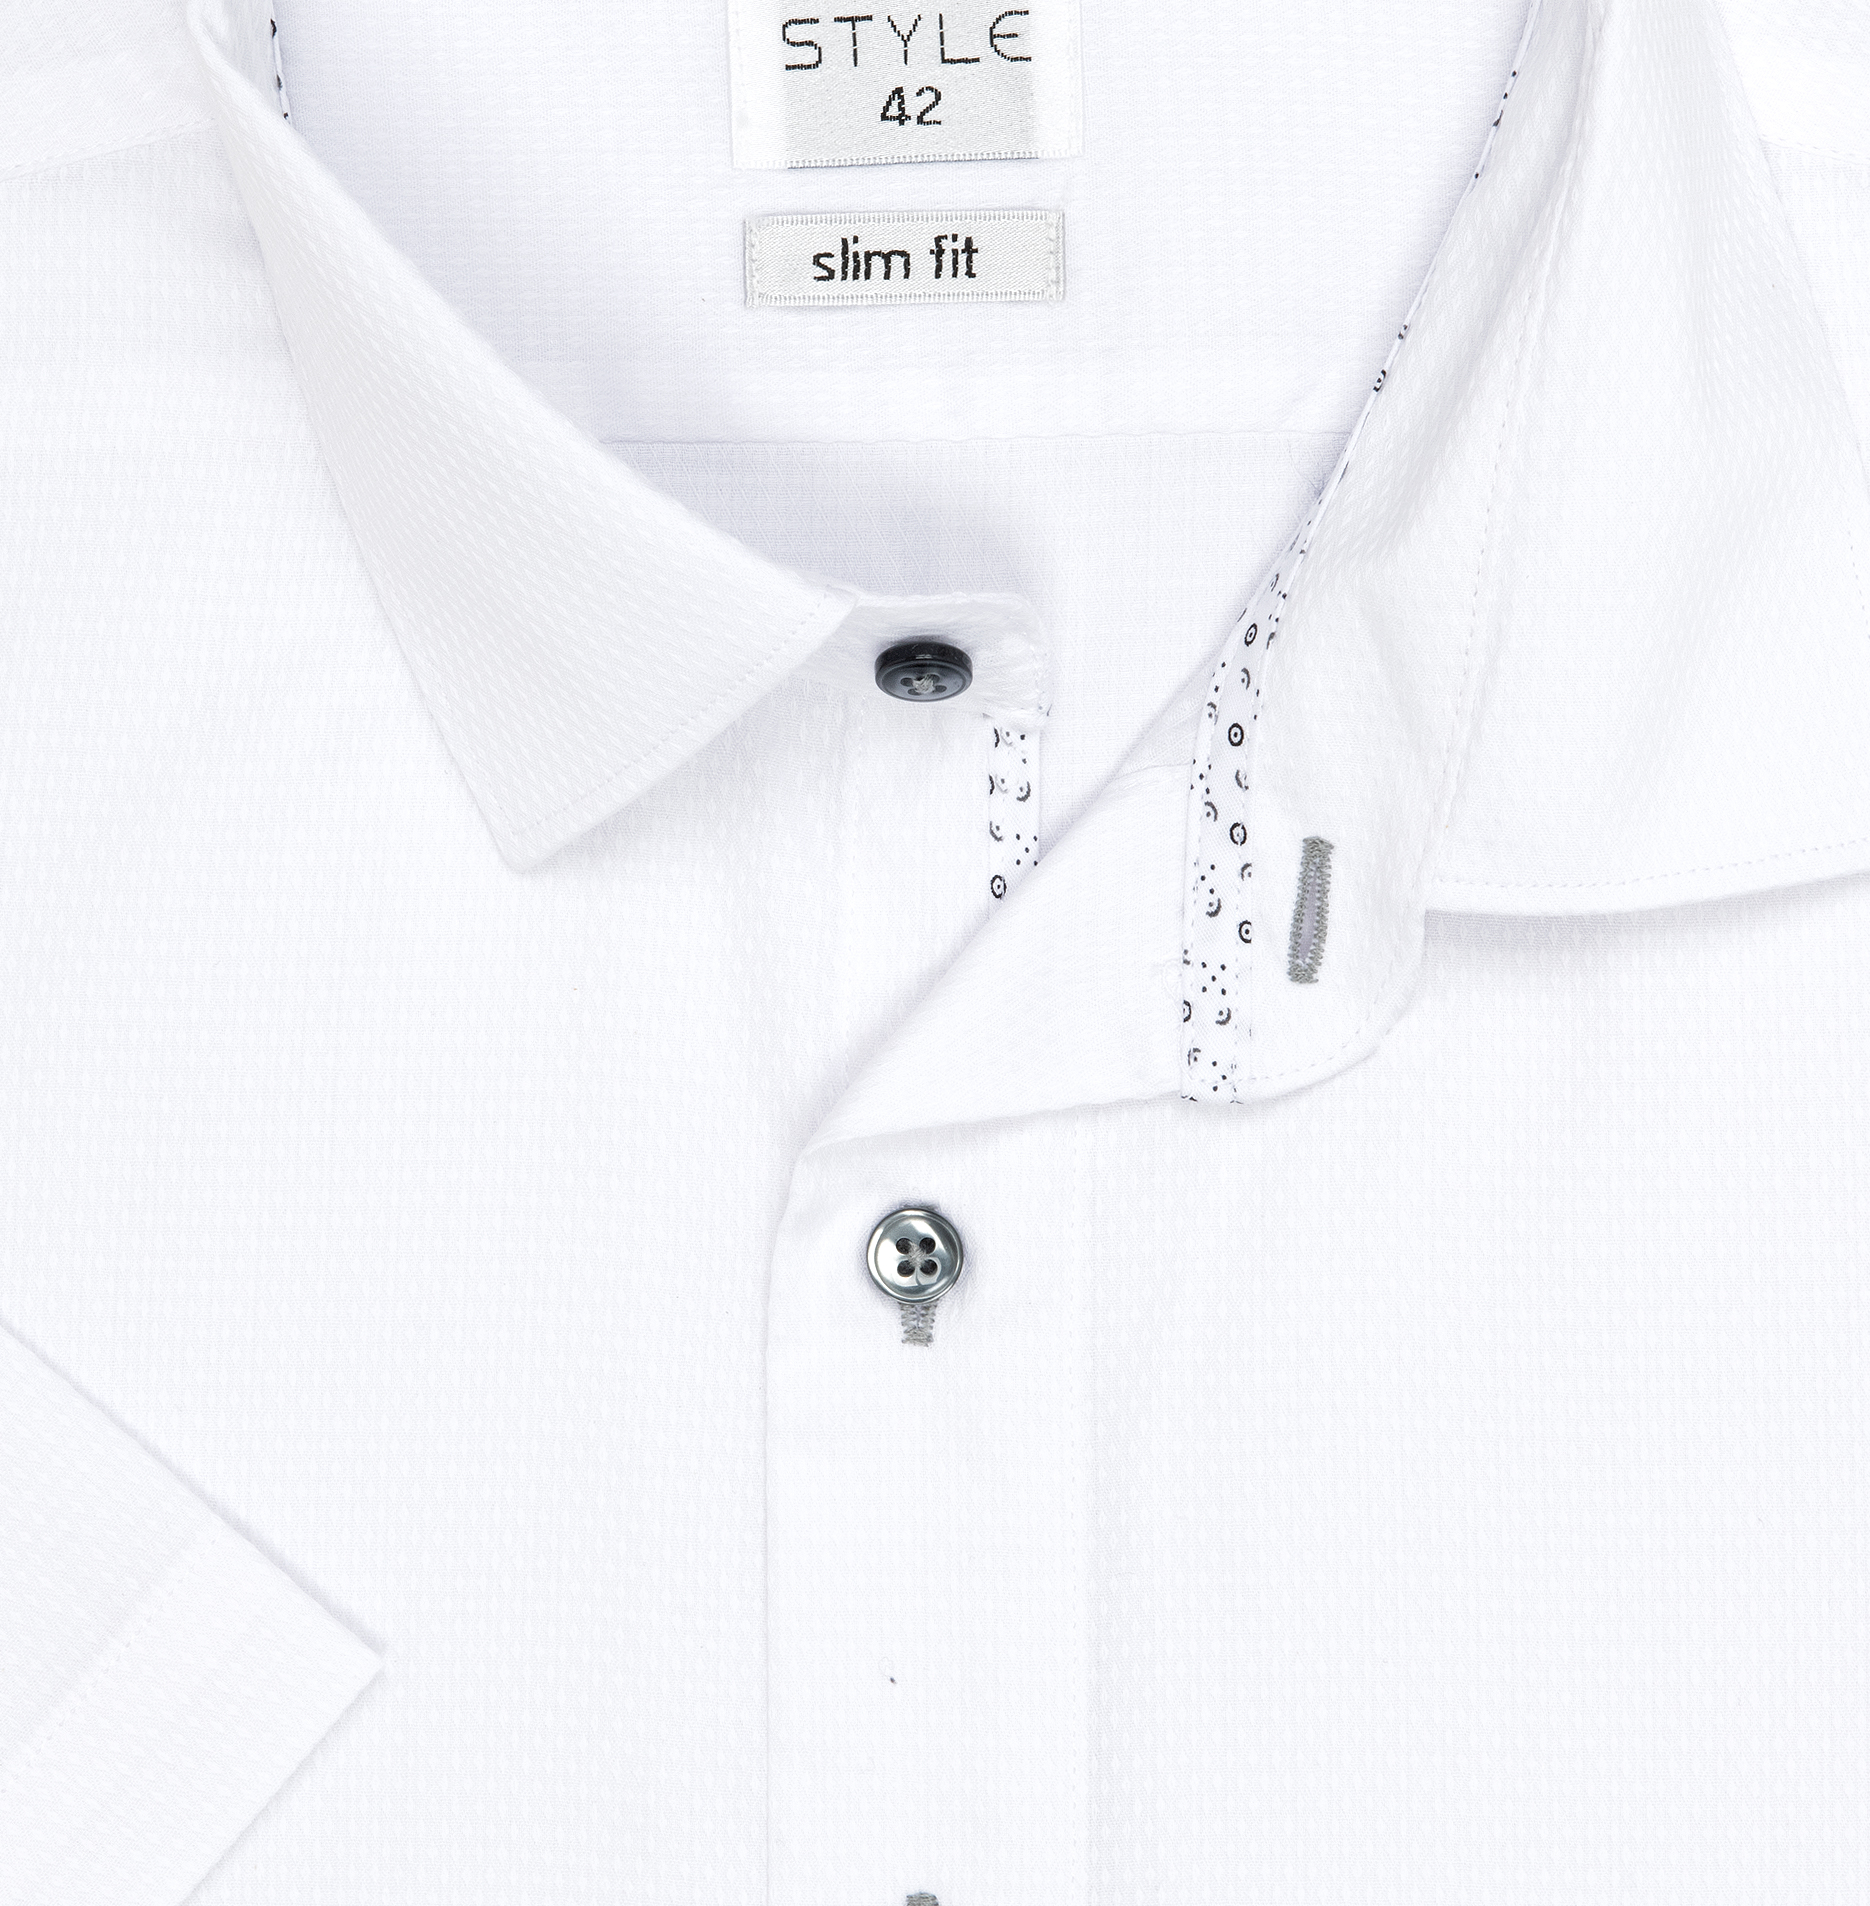 Pánská košile krátký rukáv AMJ VKSR 838/11 Slim Fit Style Velikost: 42